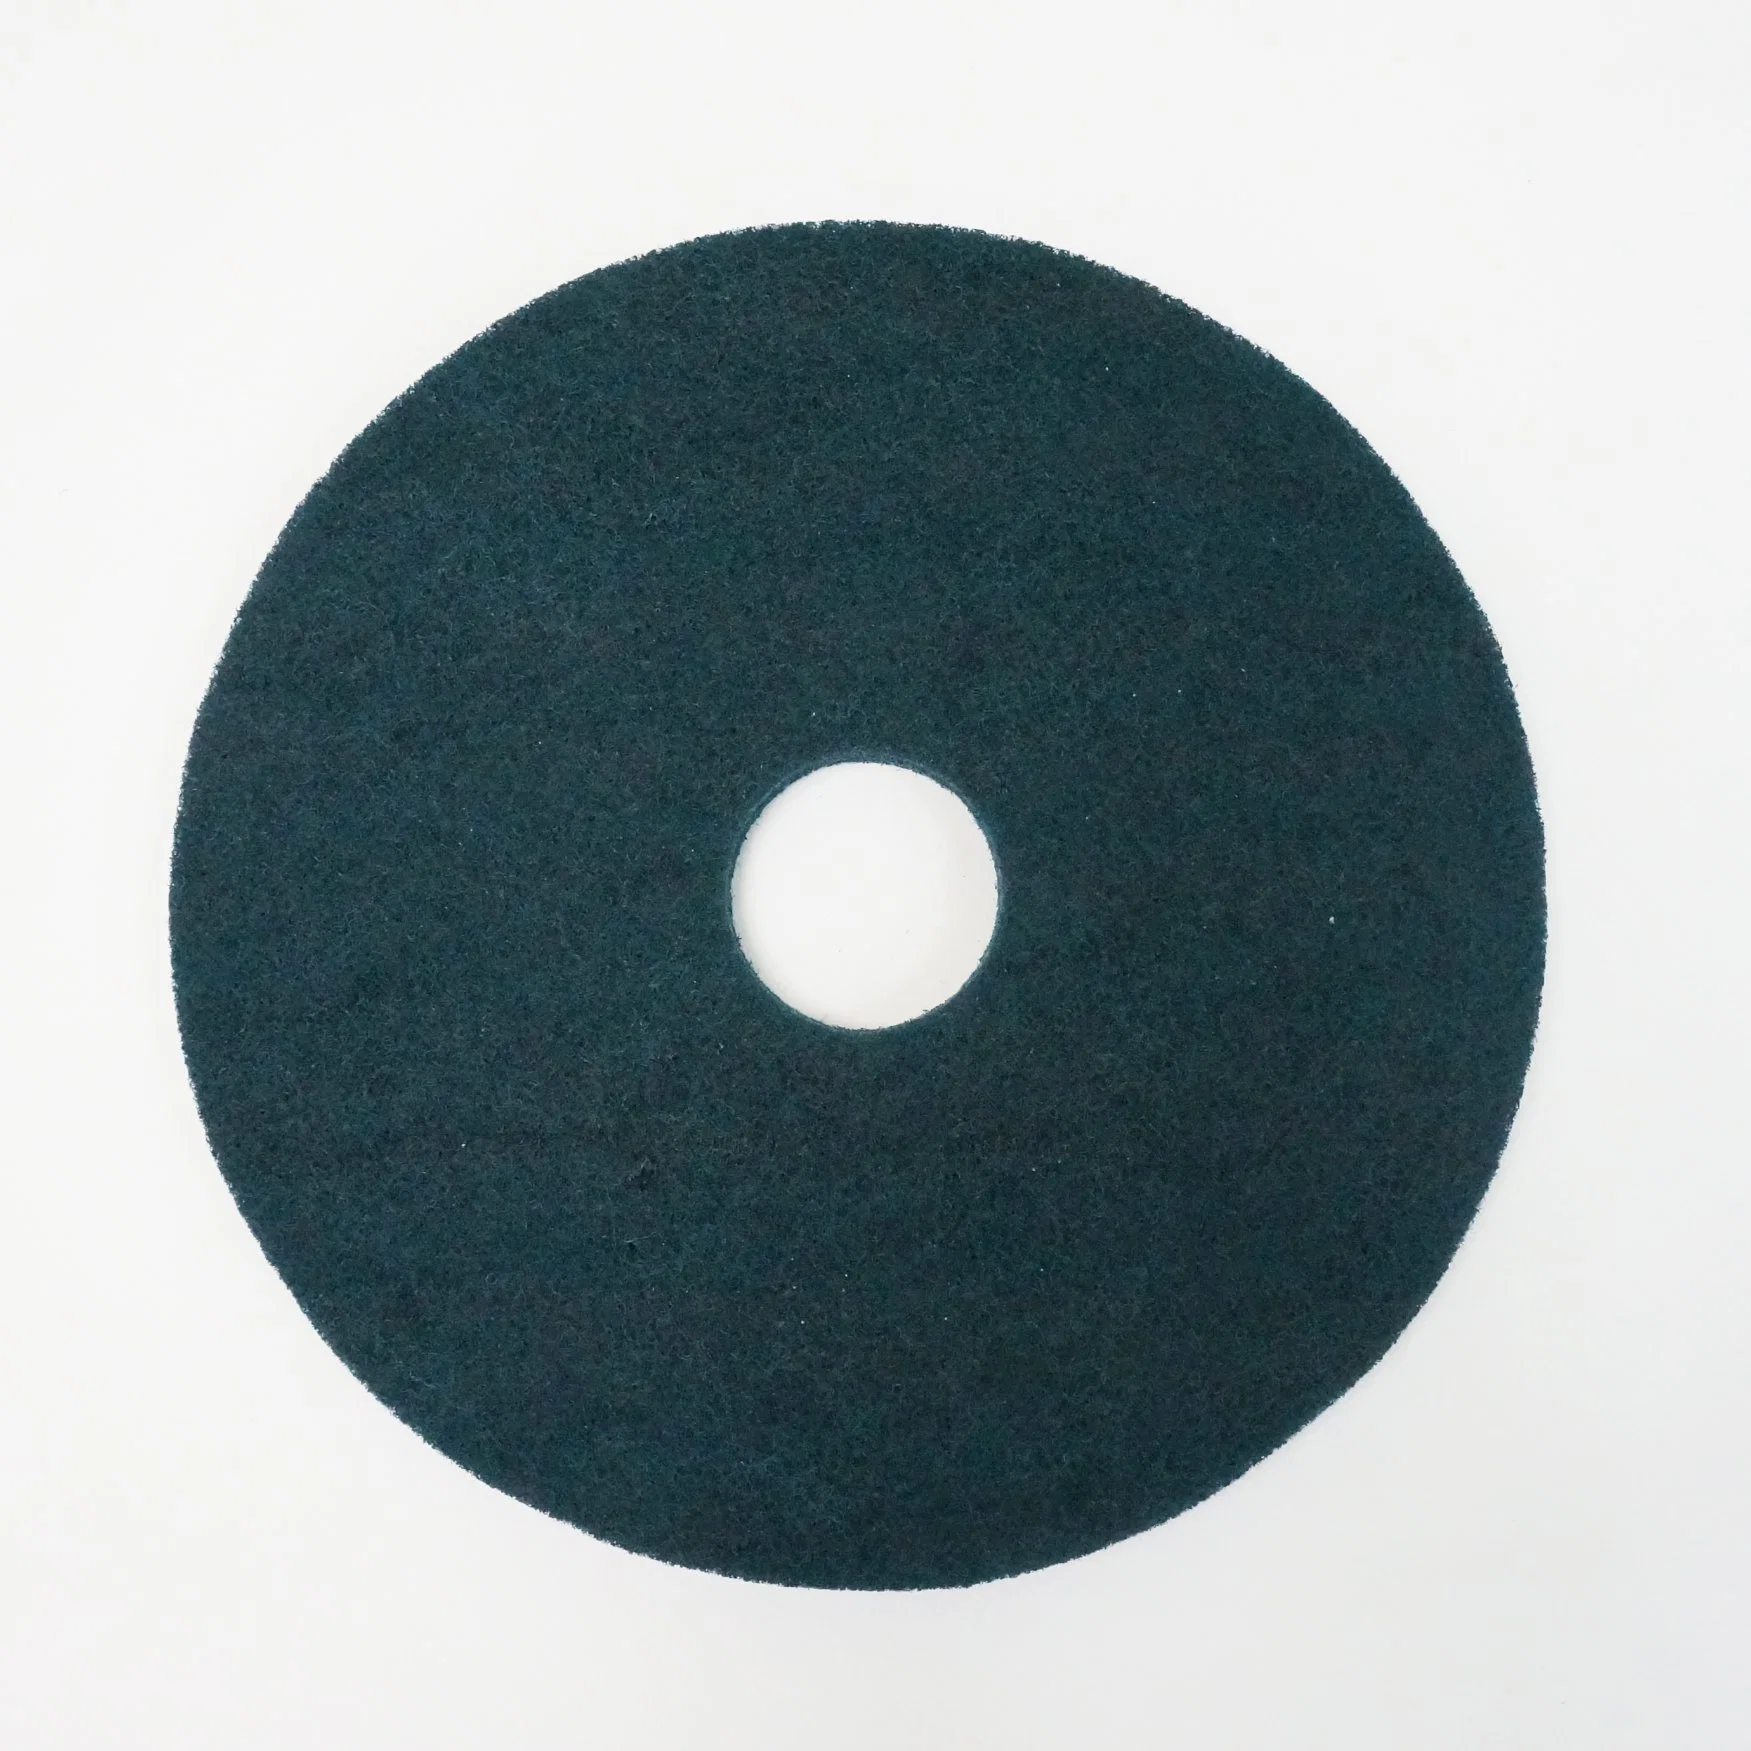 Blue Floor Scrubber Pad Polierpad für Nasssprühreinigung